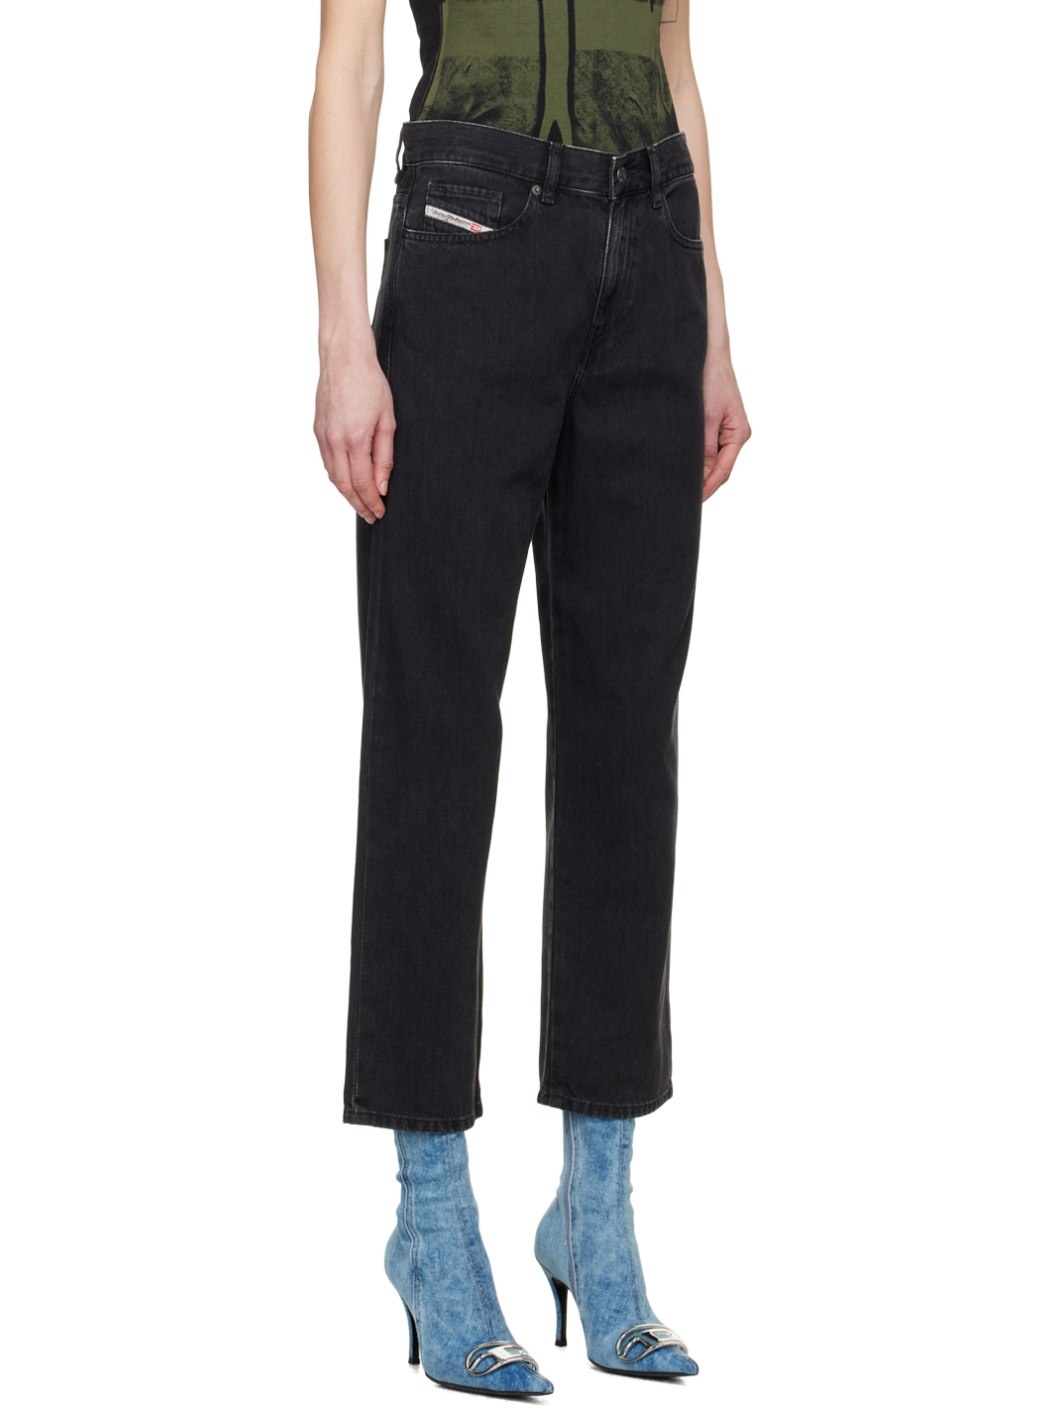 Black 2016 D-Air Jeans - 2